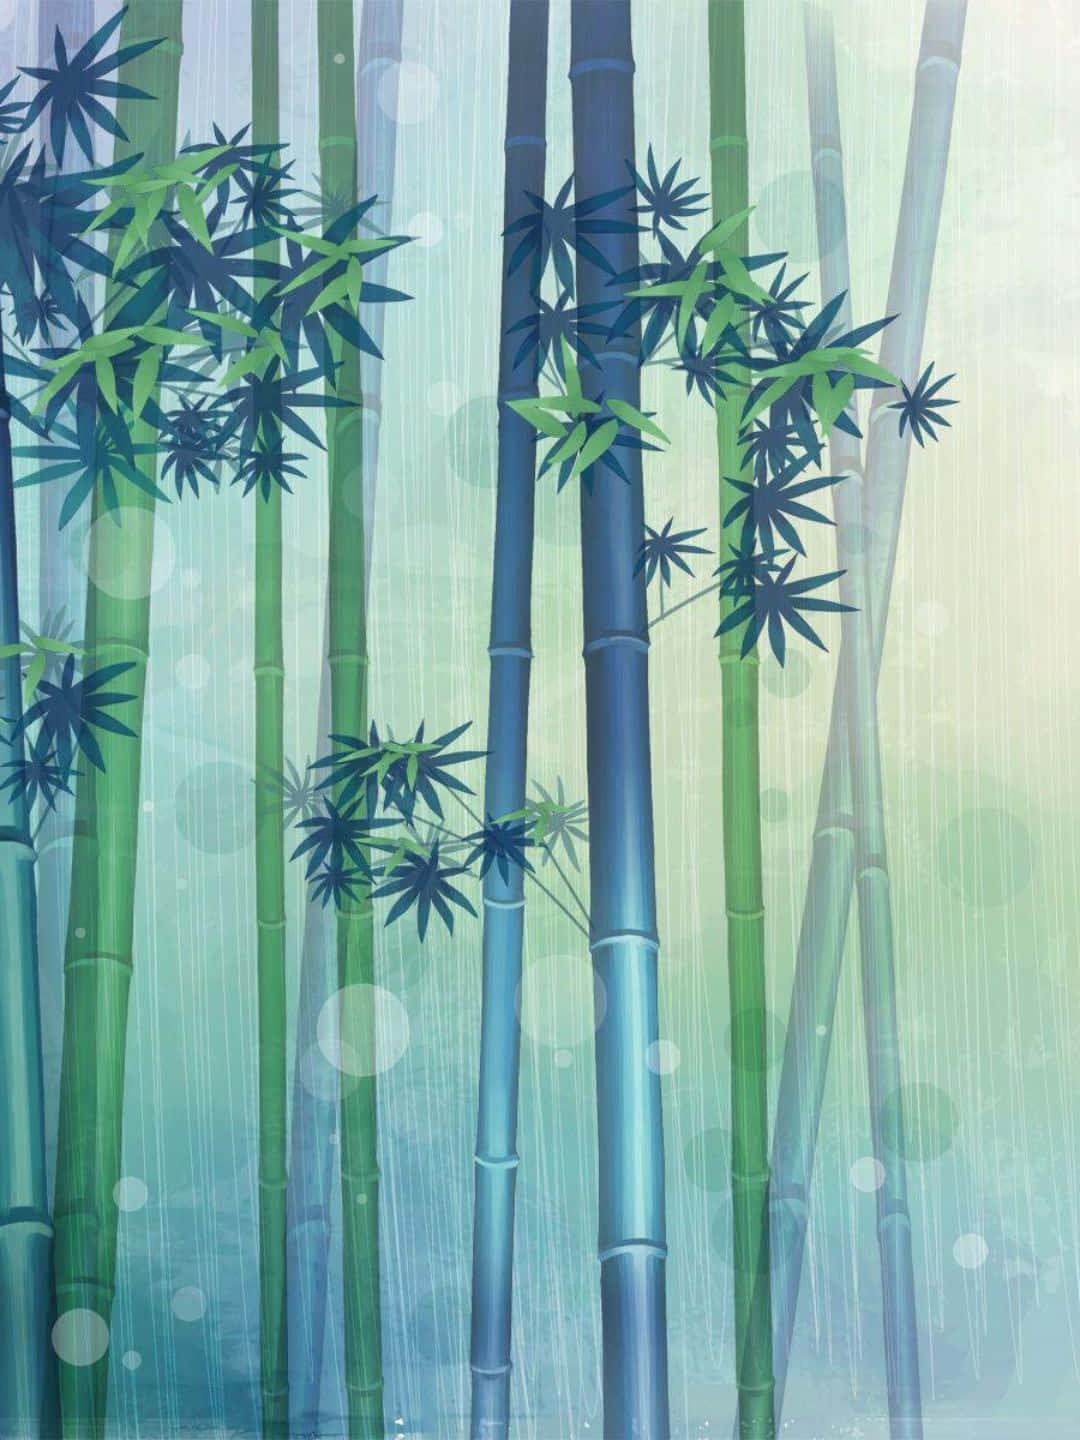 Sfondoin Bambù Disegno Fanart Delle Piante Di Bambù Con Foglie A 1440p